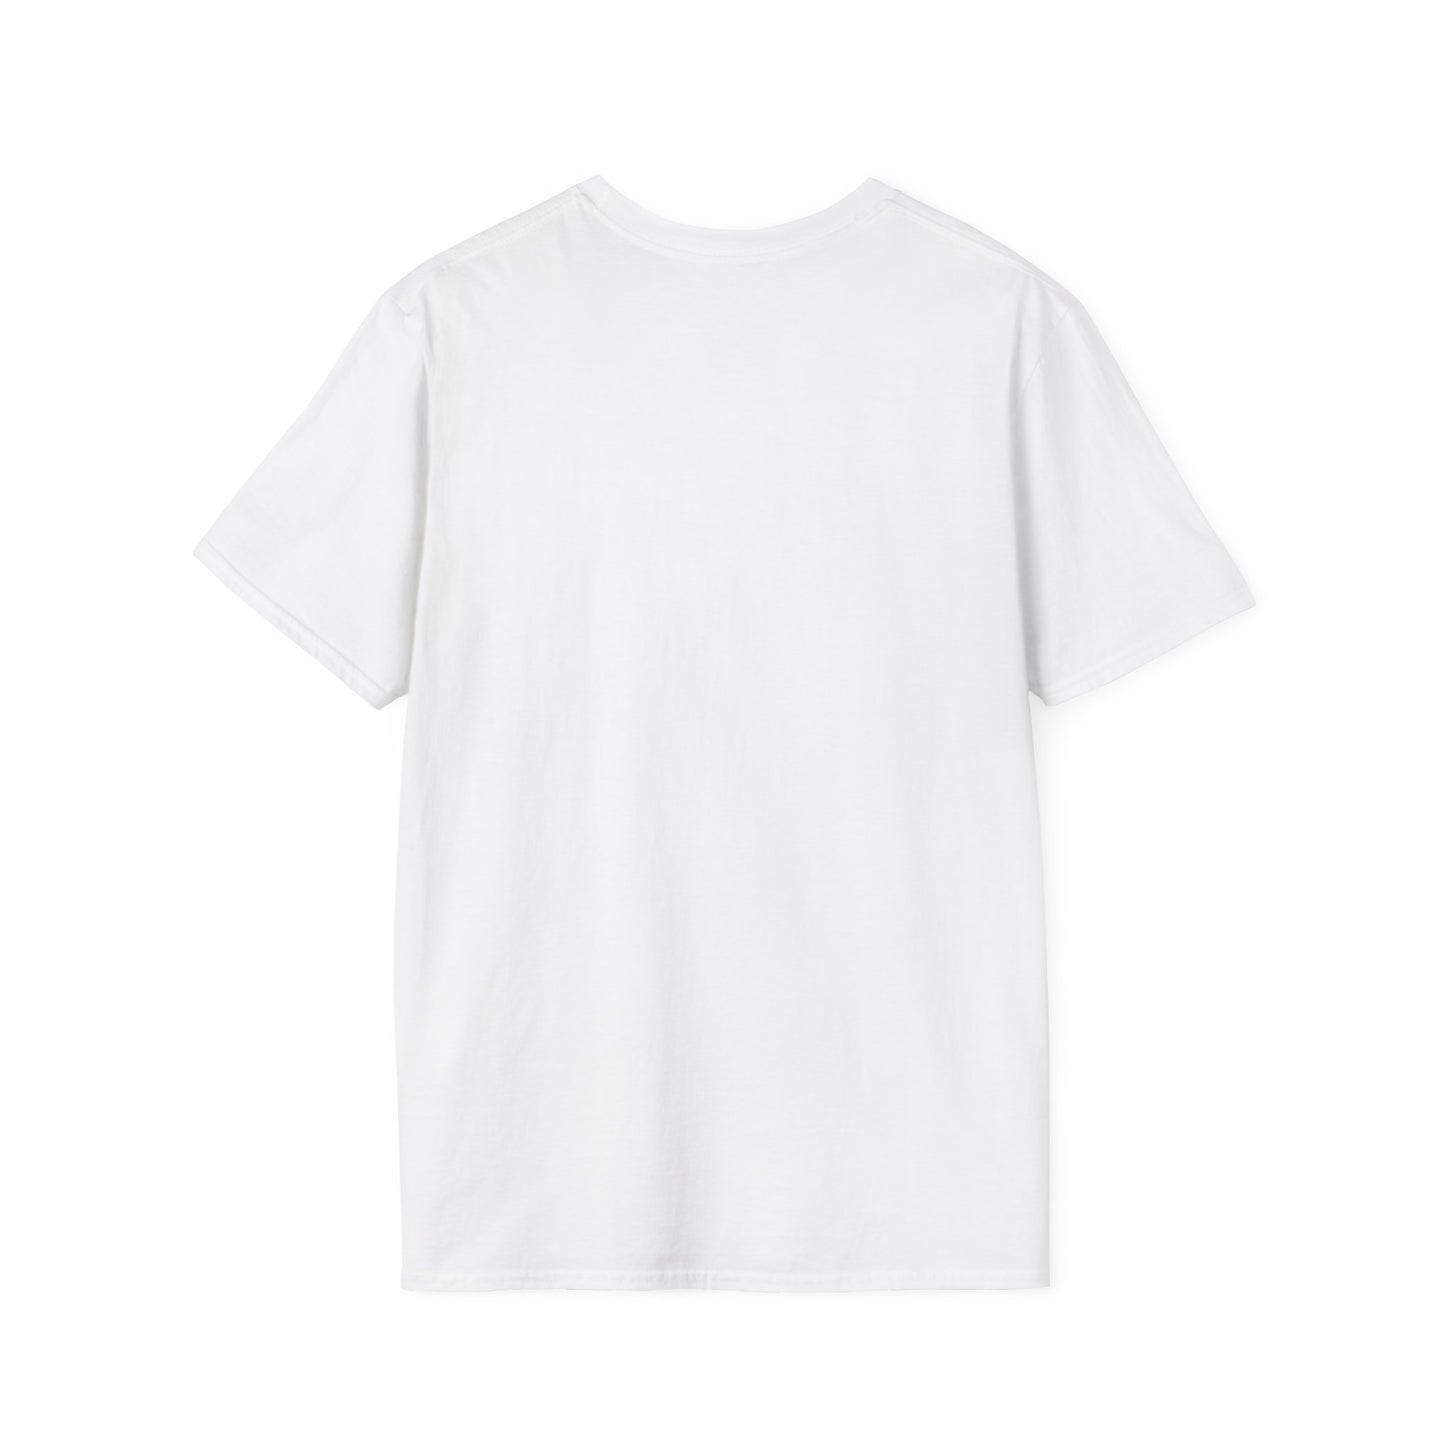 CAT MOM UNIVERSITY - Unisex Softstyle T-Shirt